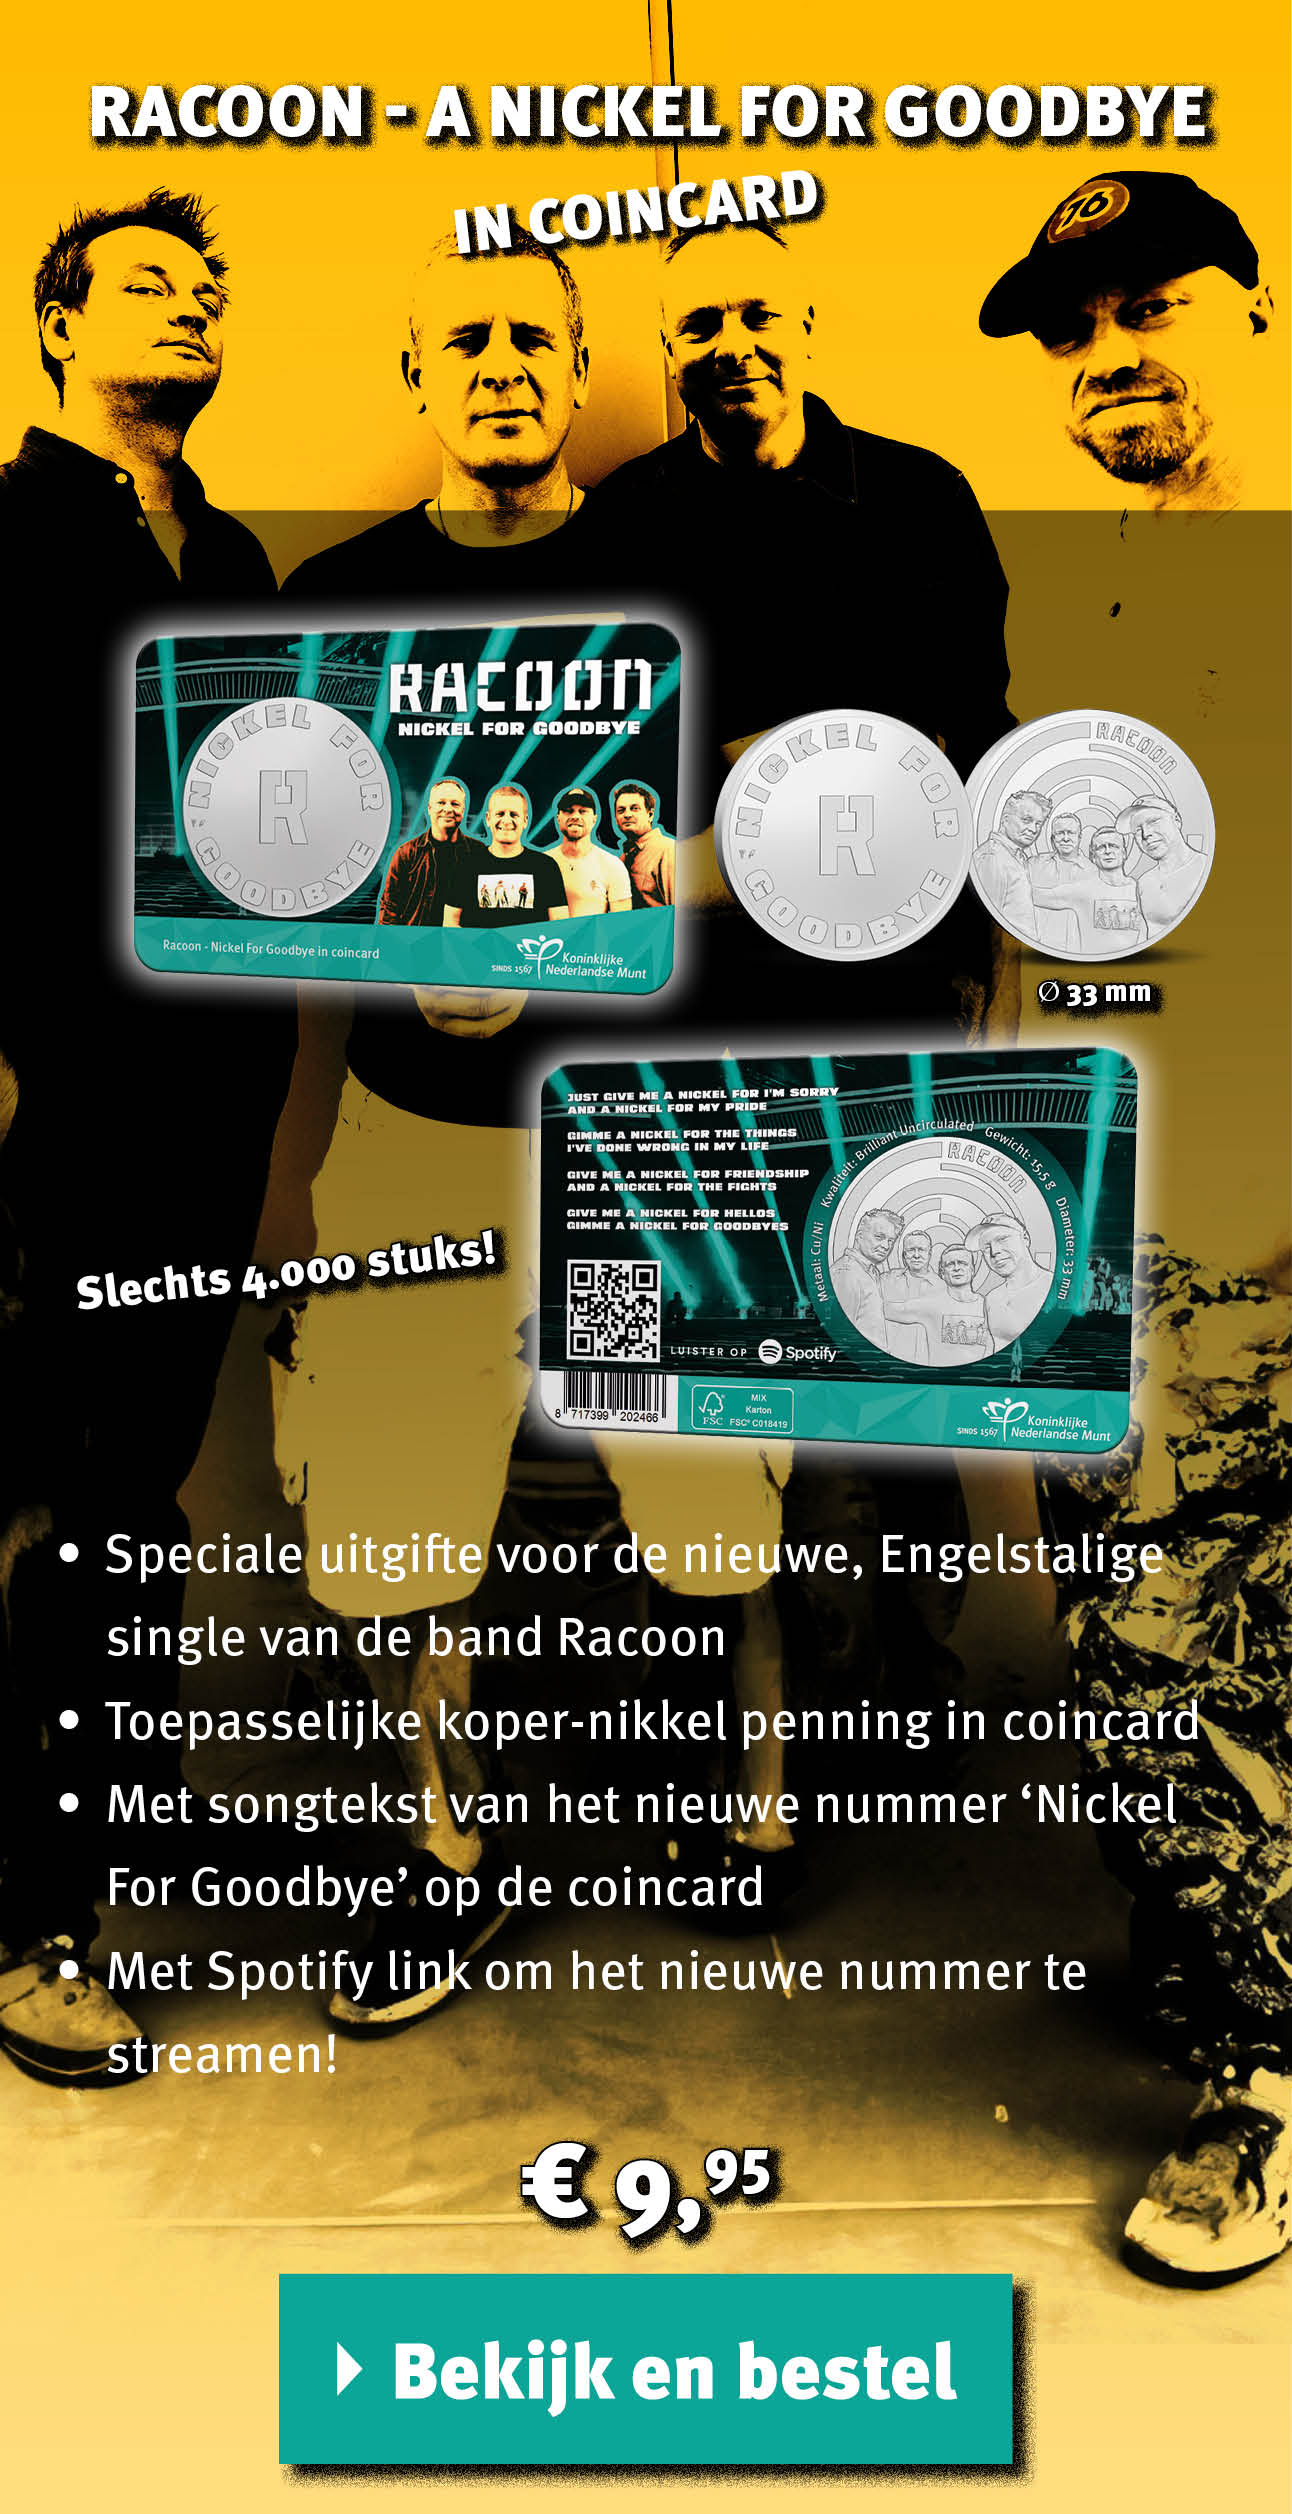 Bekijk en bestel: Racoon coincard